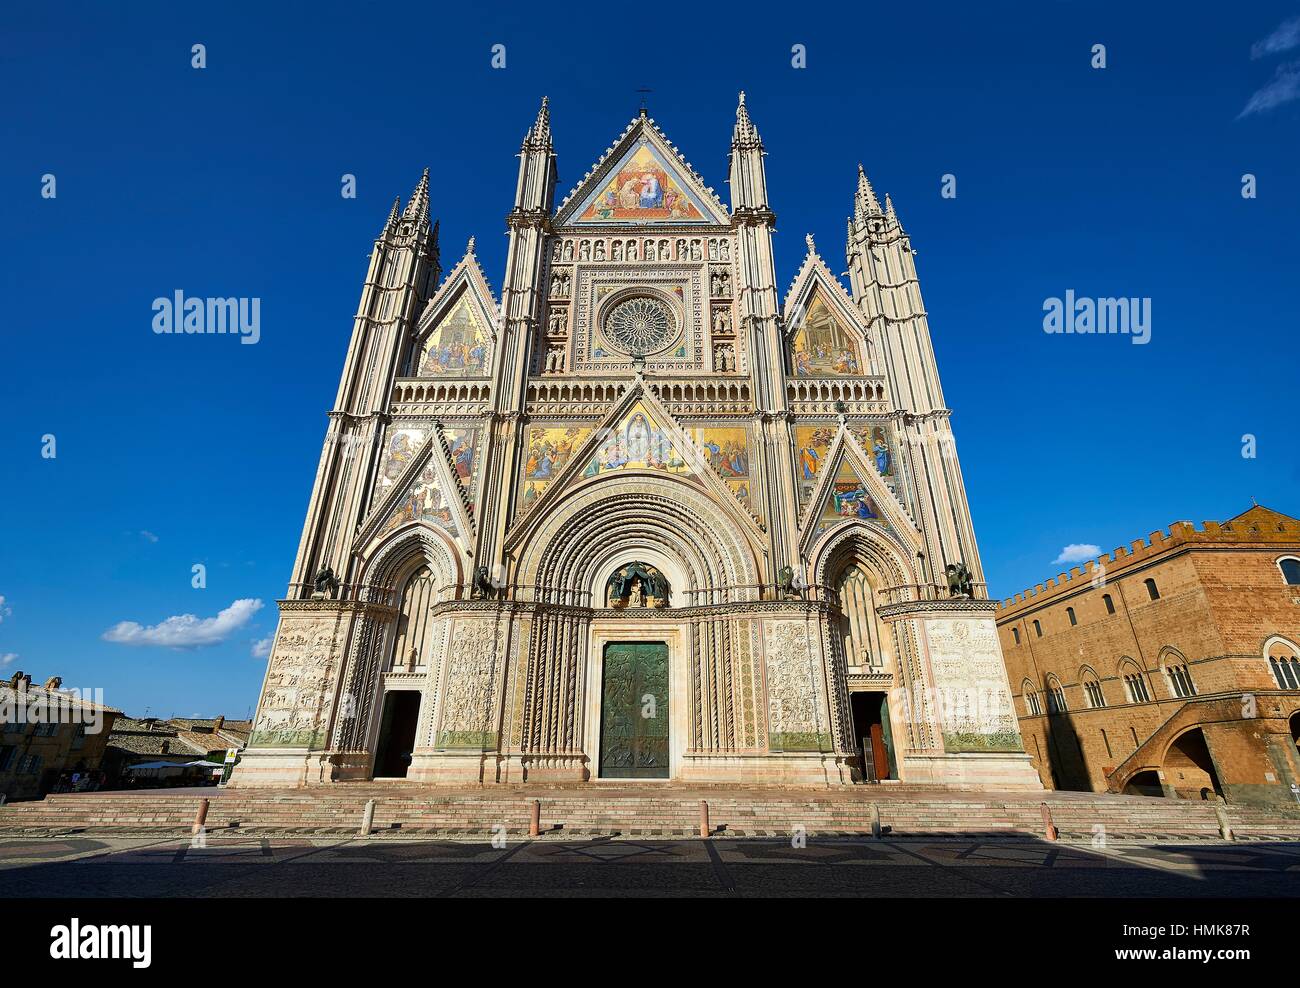 Toscana del siglo XIV en estilo gótico de la fachada de la Catedral de Orvieto, diseñado por Maitani, Umbría, Italia. Foto de stock